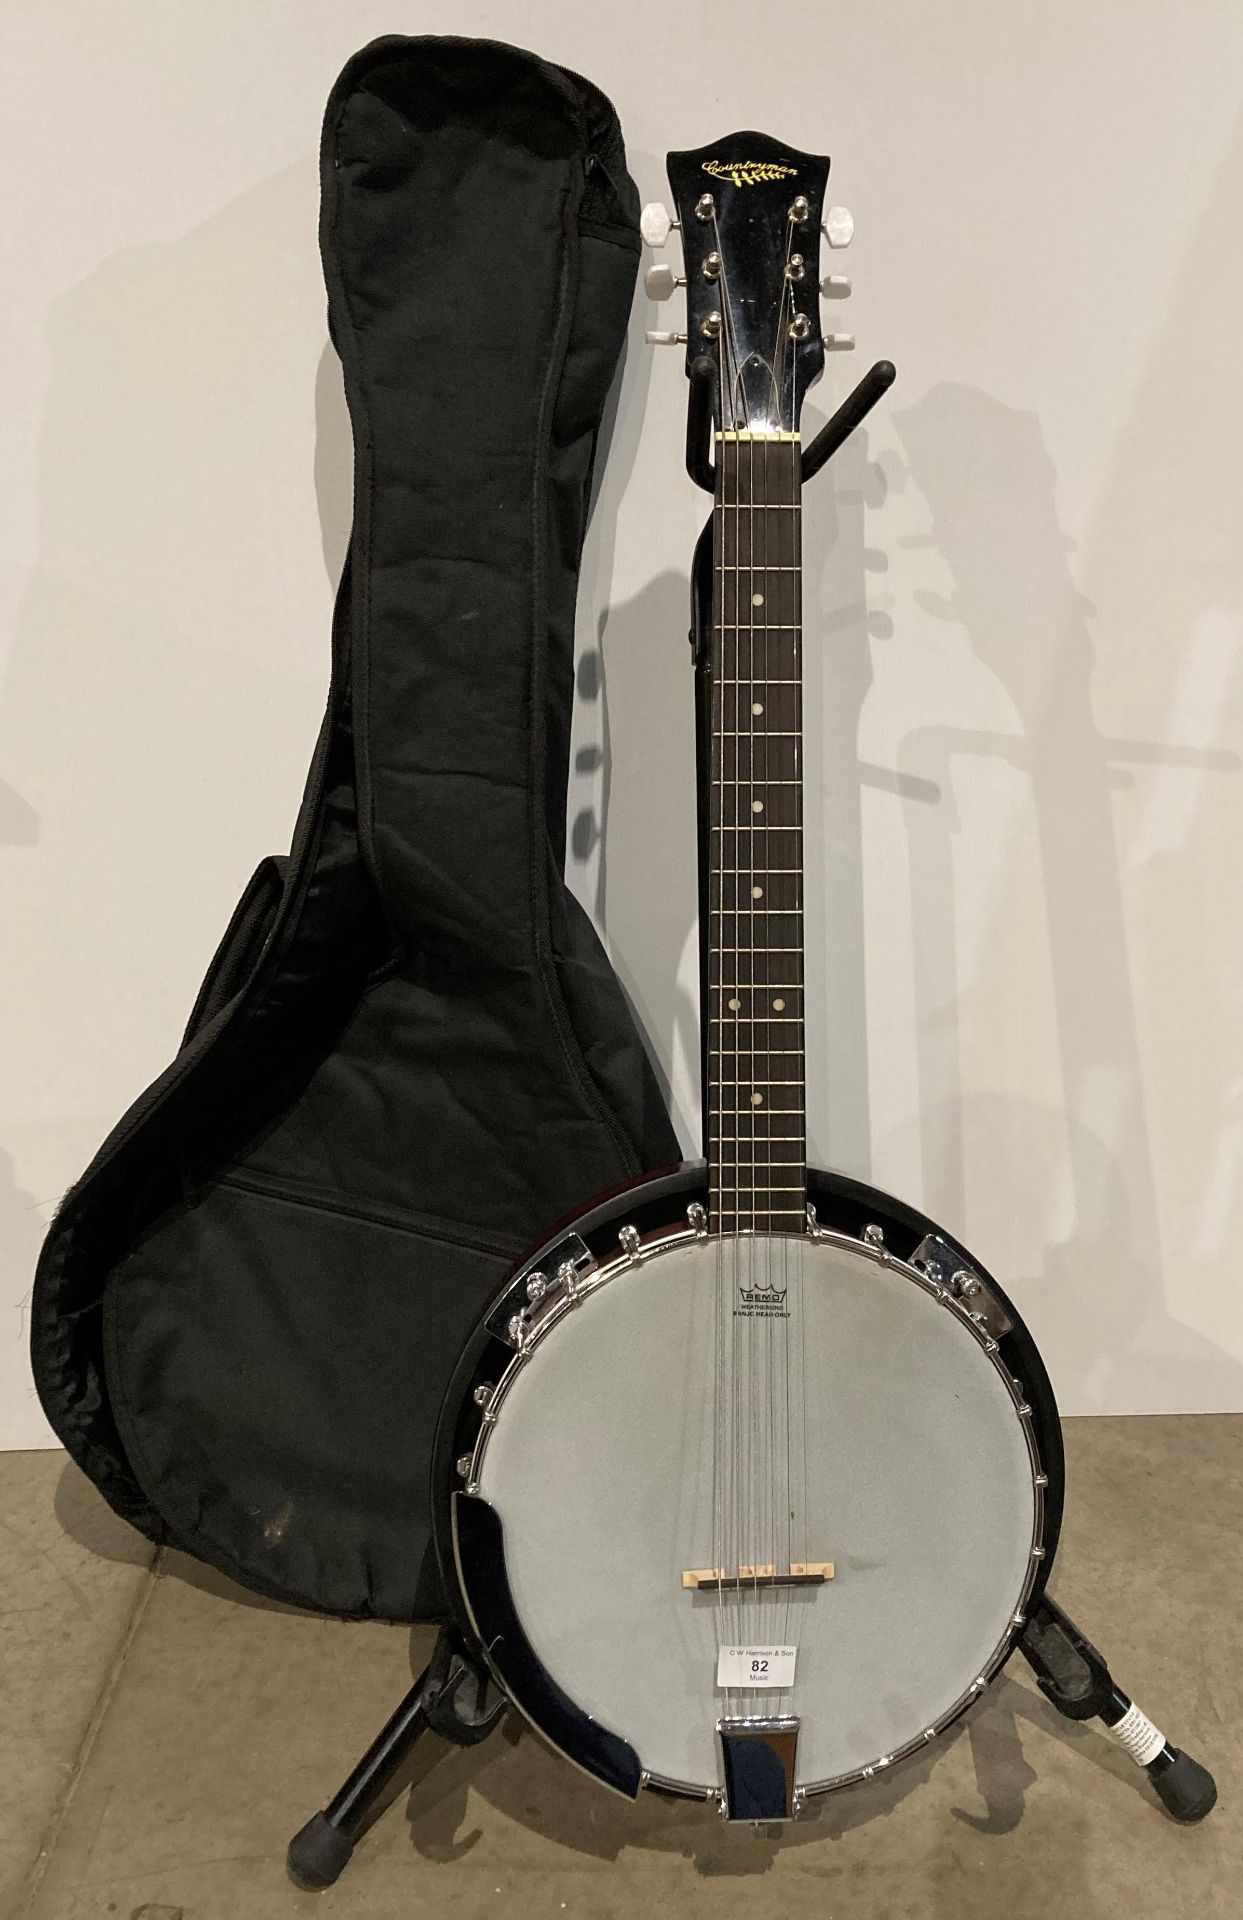 Countryman Banjo in a black ice bag (Saleroom location: S3)